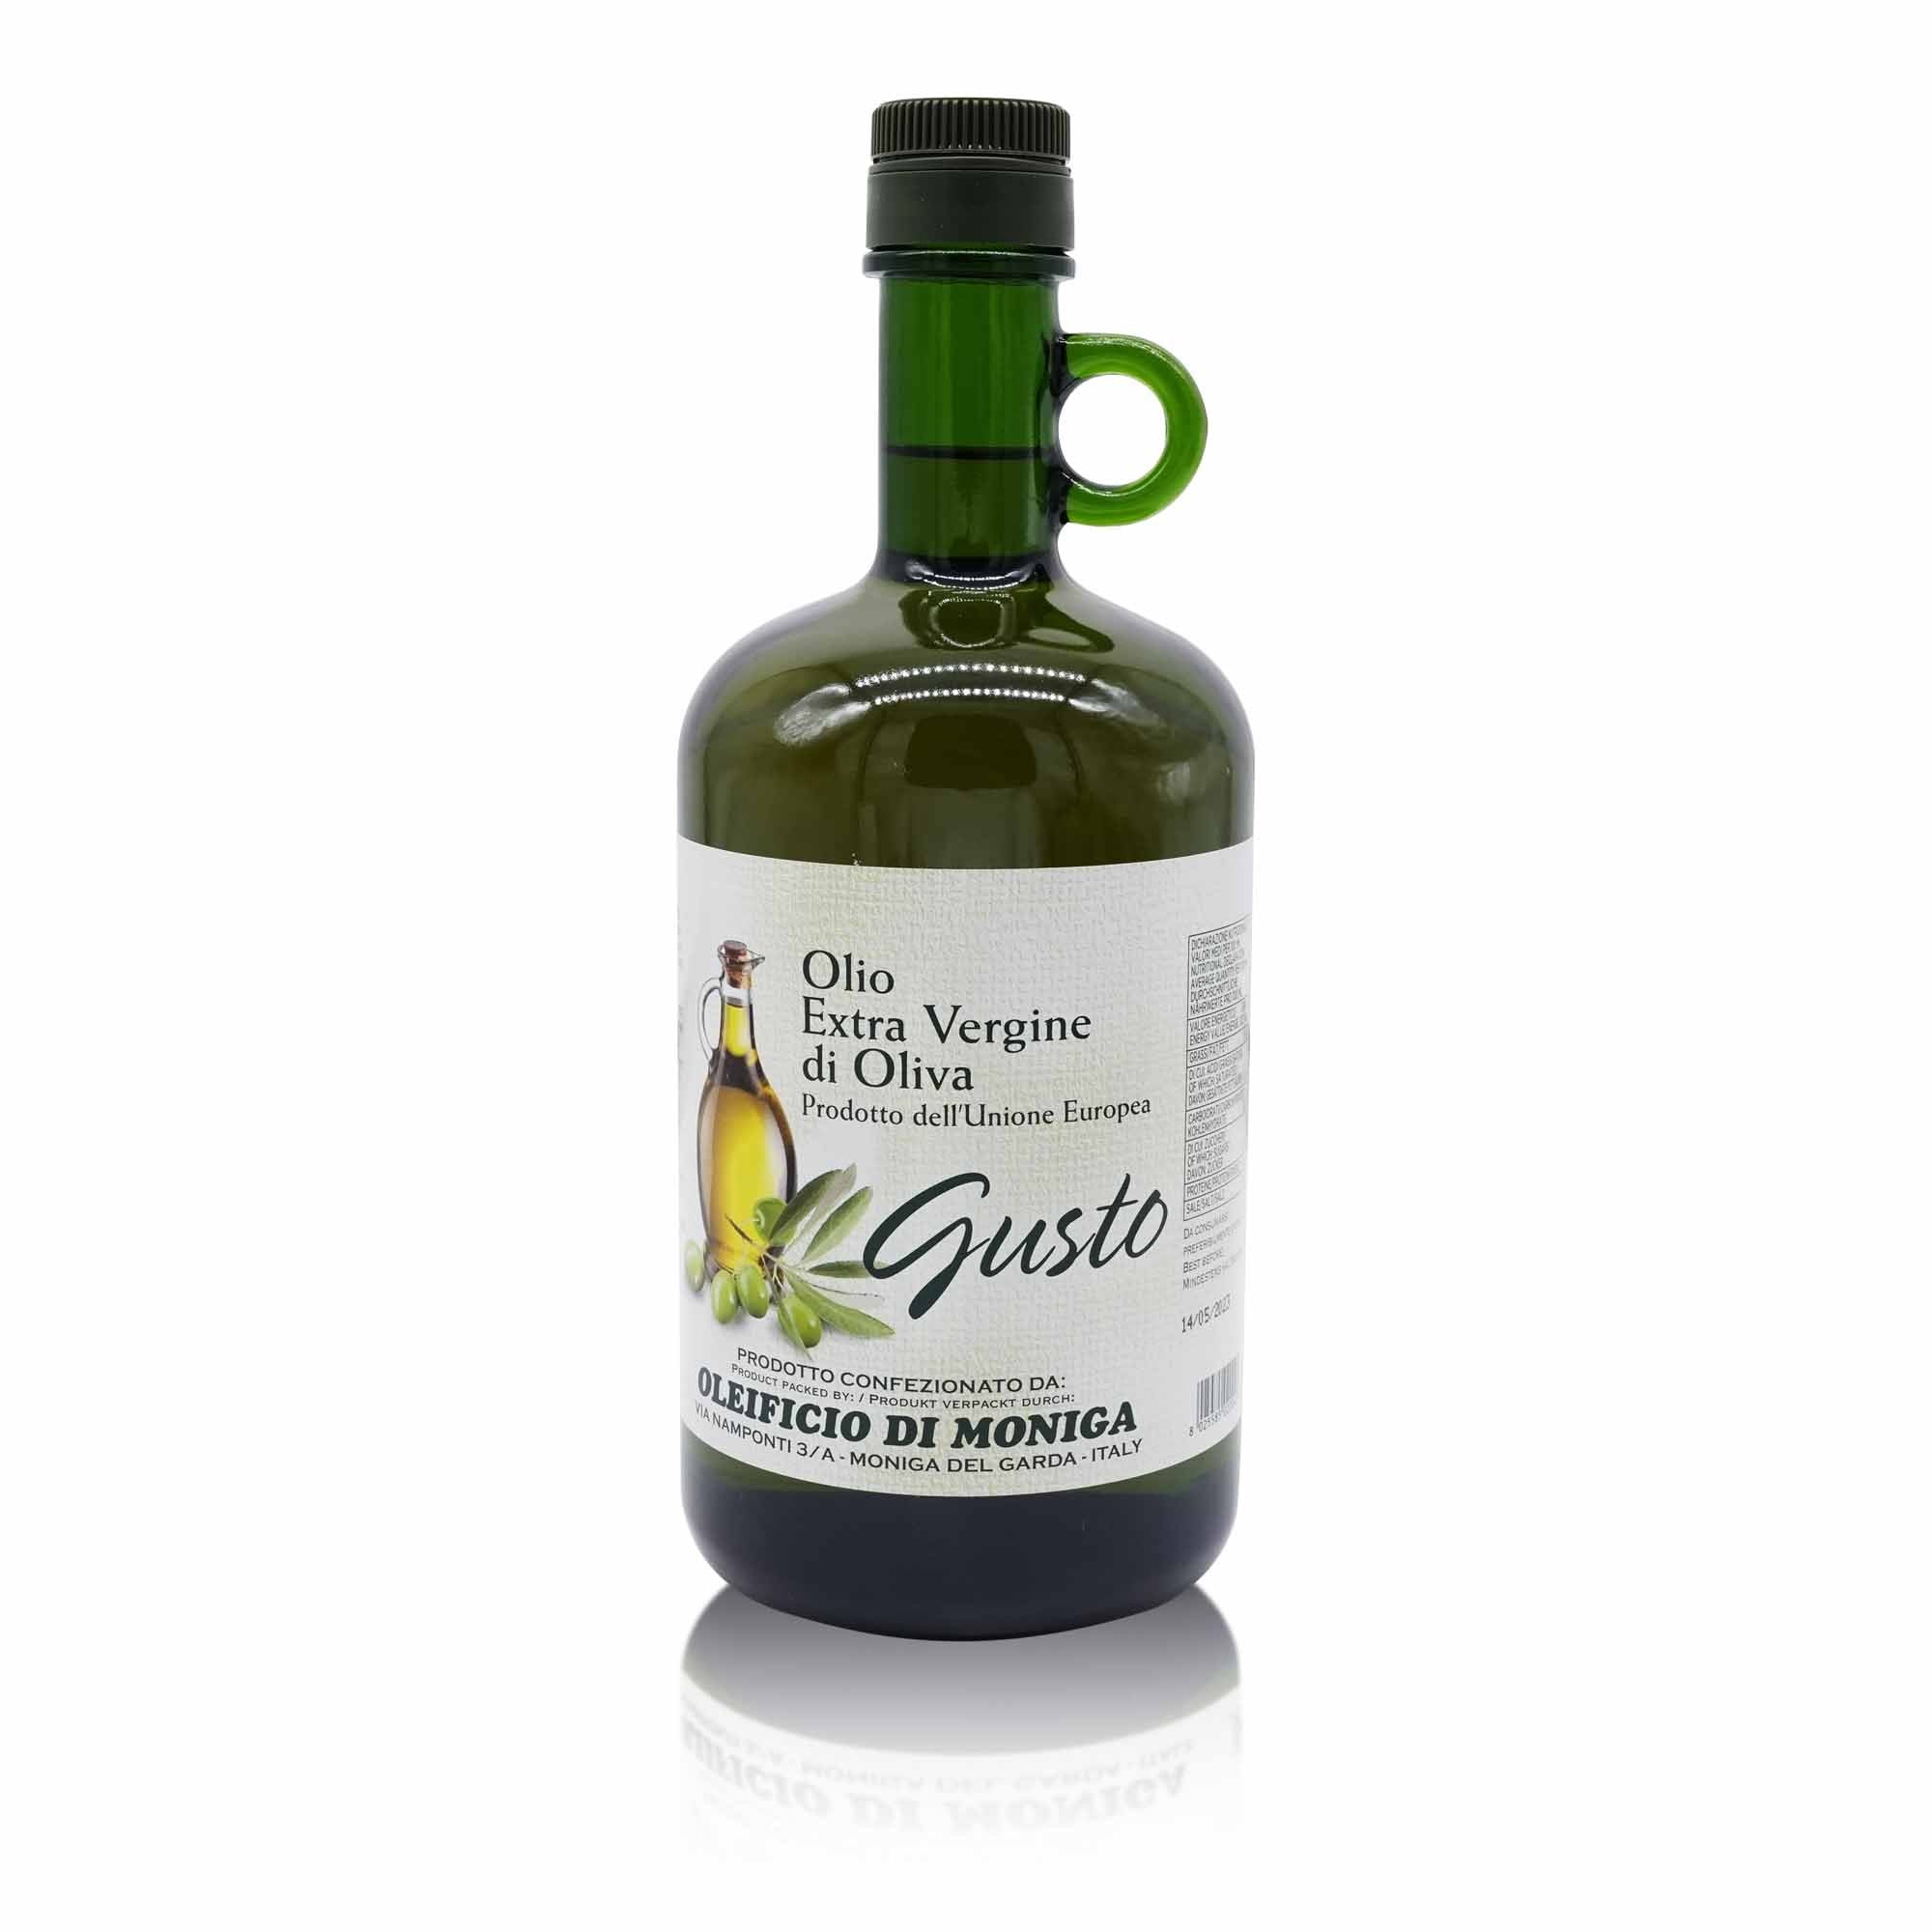 OLEIFICIO Olio Extra vergine di Oliva "Gusto" – Olivenöl nativ extra "Gusto" - 1l